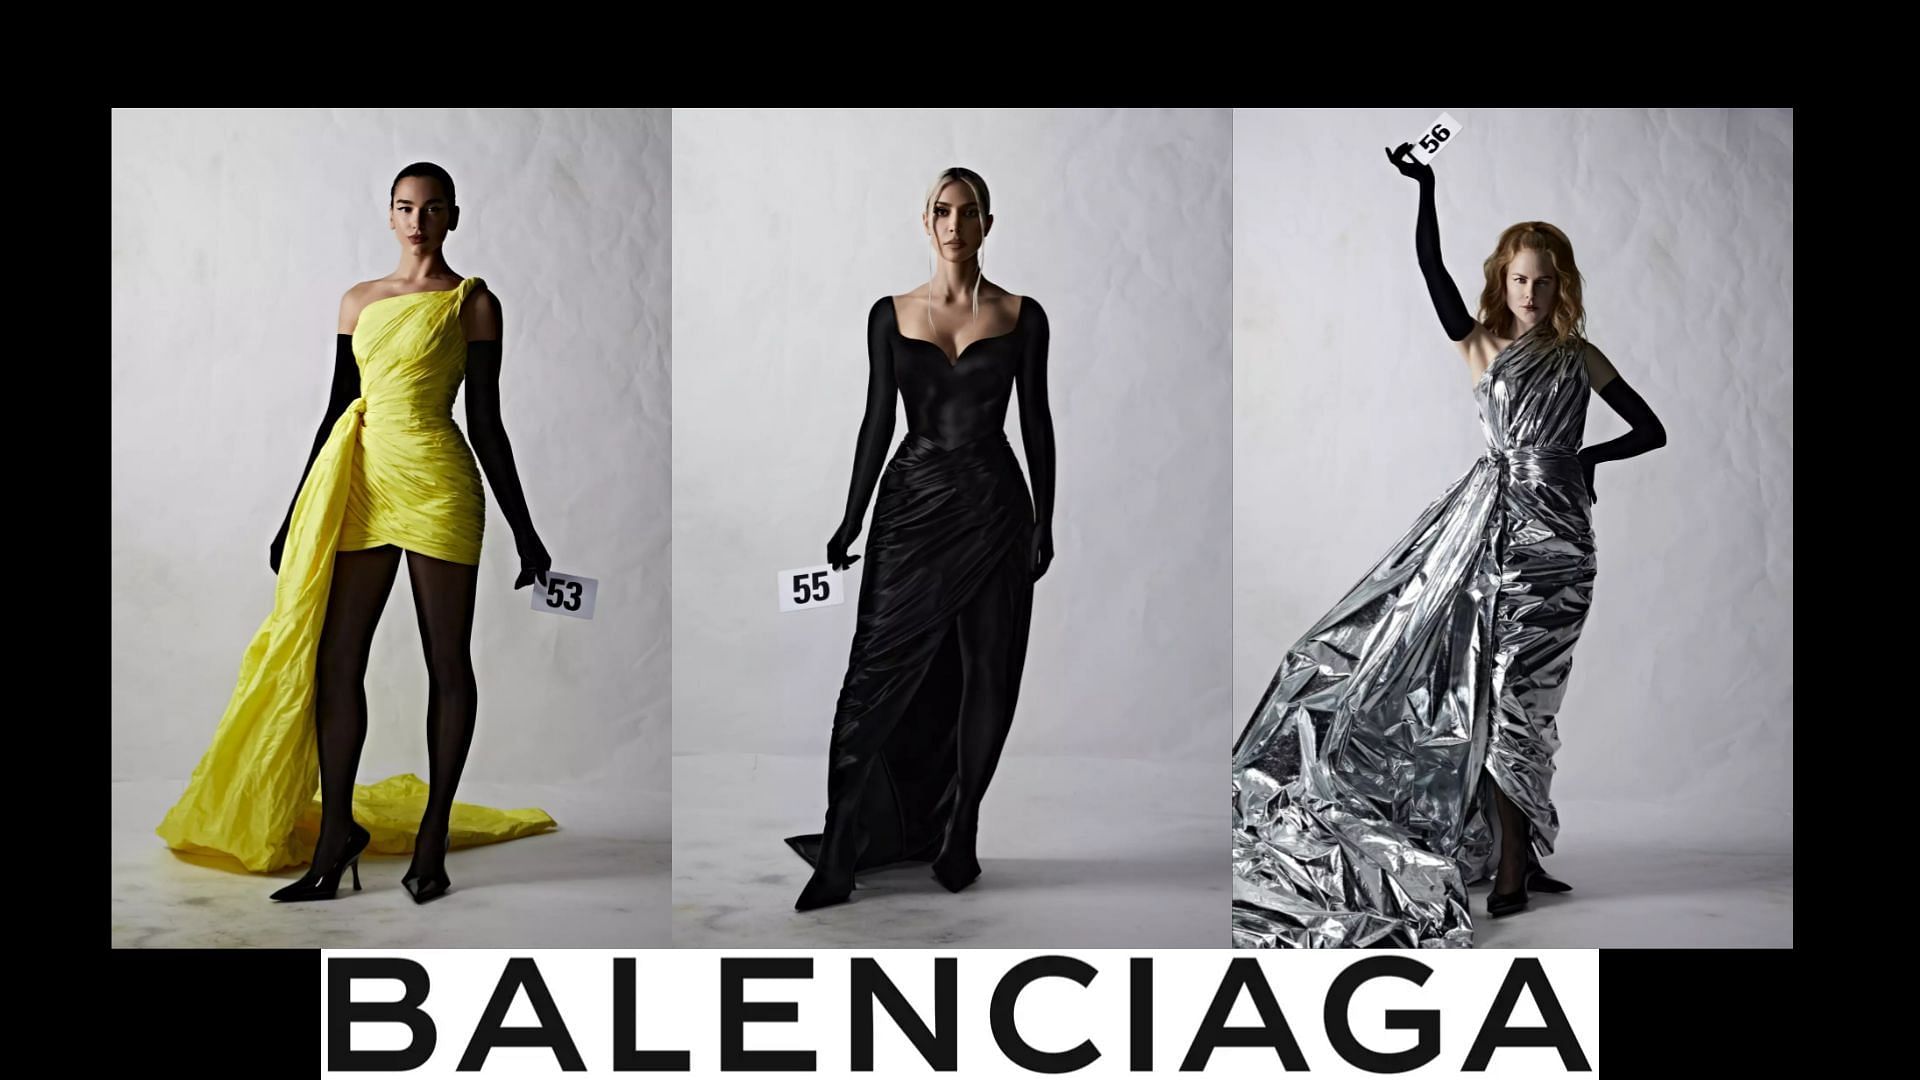 Thời trang Haute Couture tái tạo lại sức sống cho Balenciaga  Nhịp sống  kinh tế Việt Nam  Thế giới